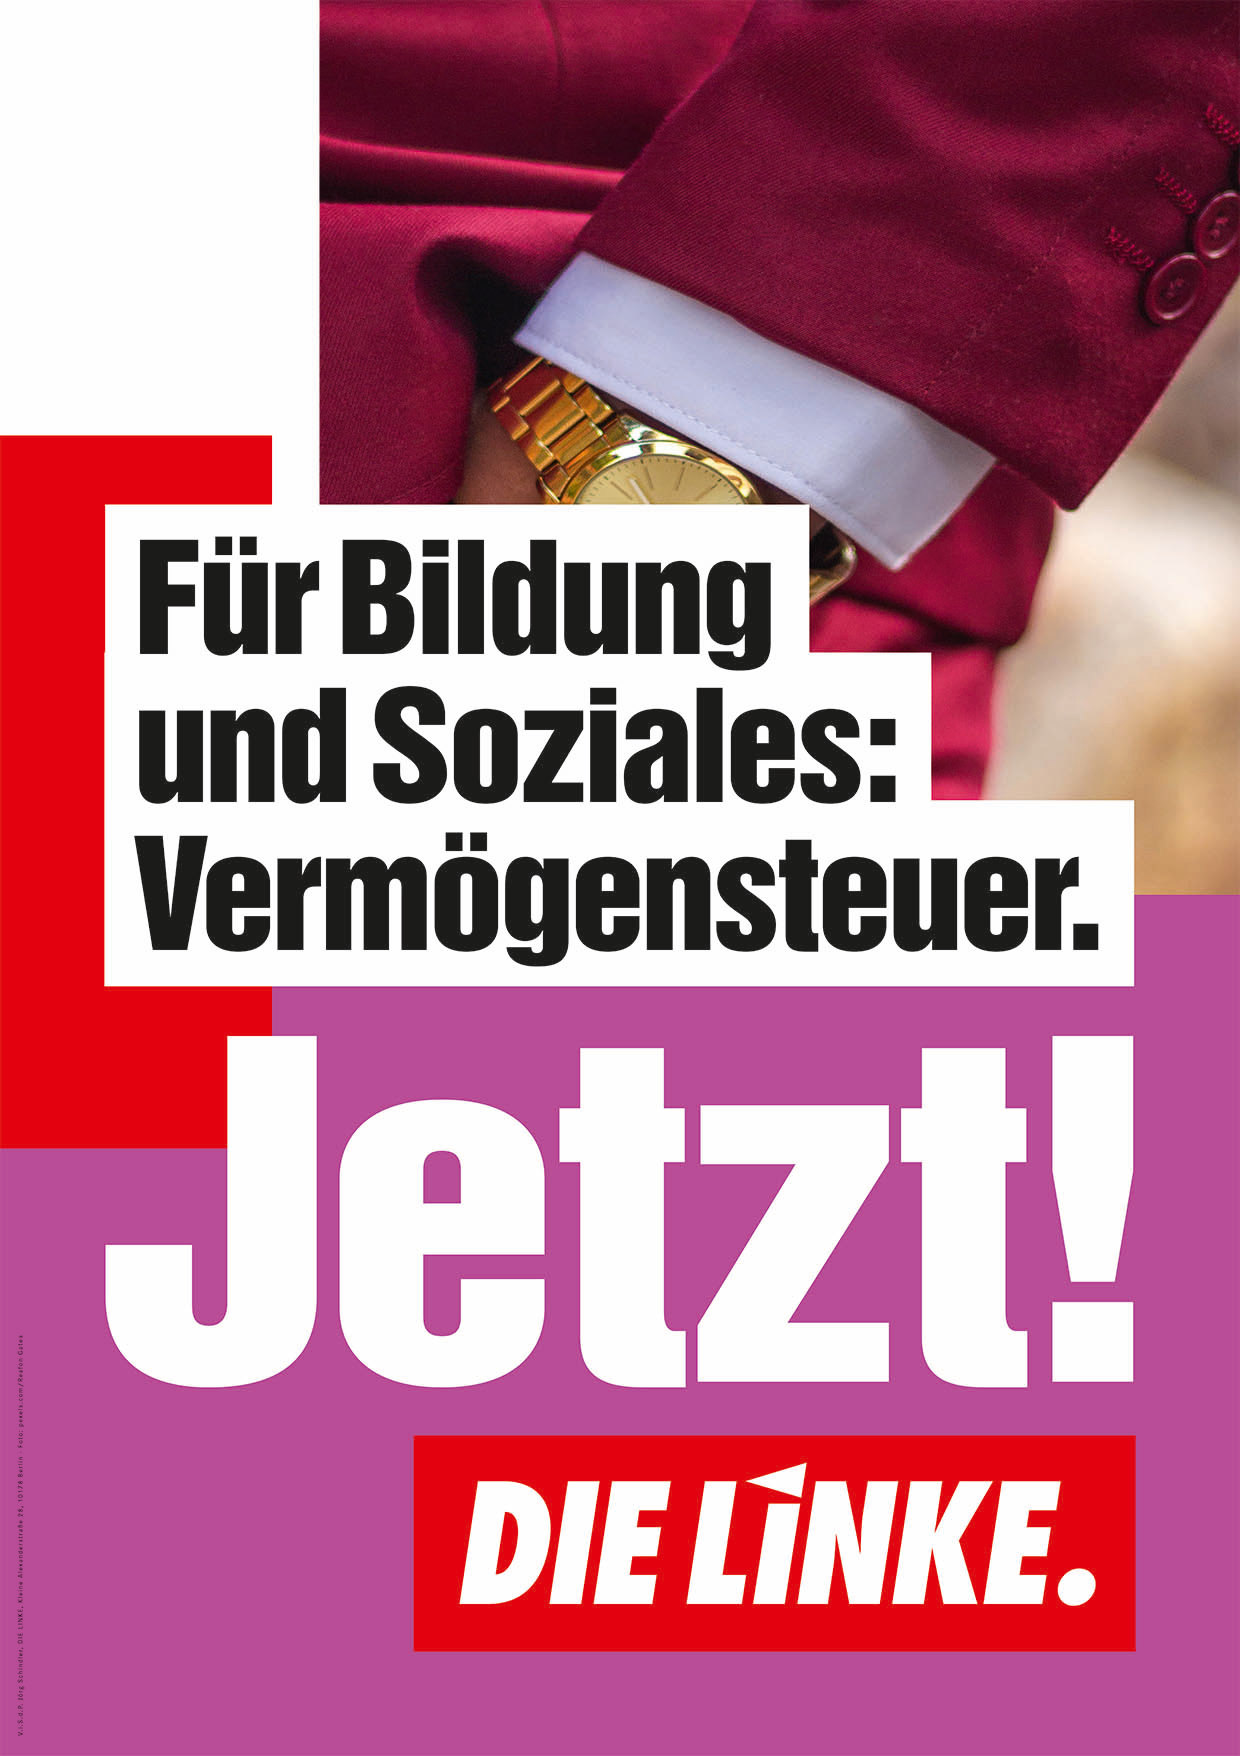 DIE LINKE Plakat Bundestagswahl 2021 – Bildung